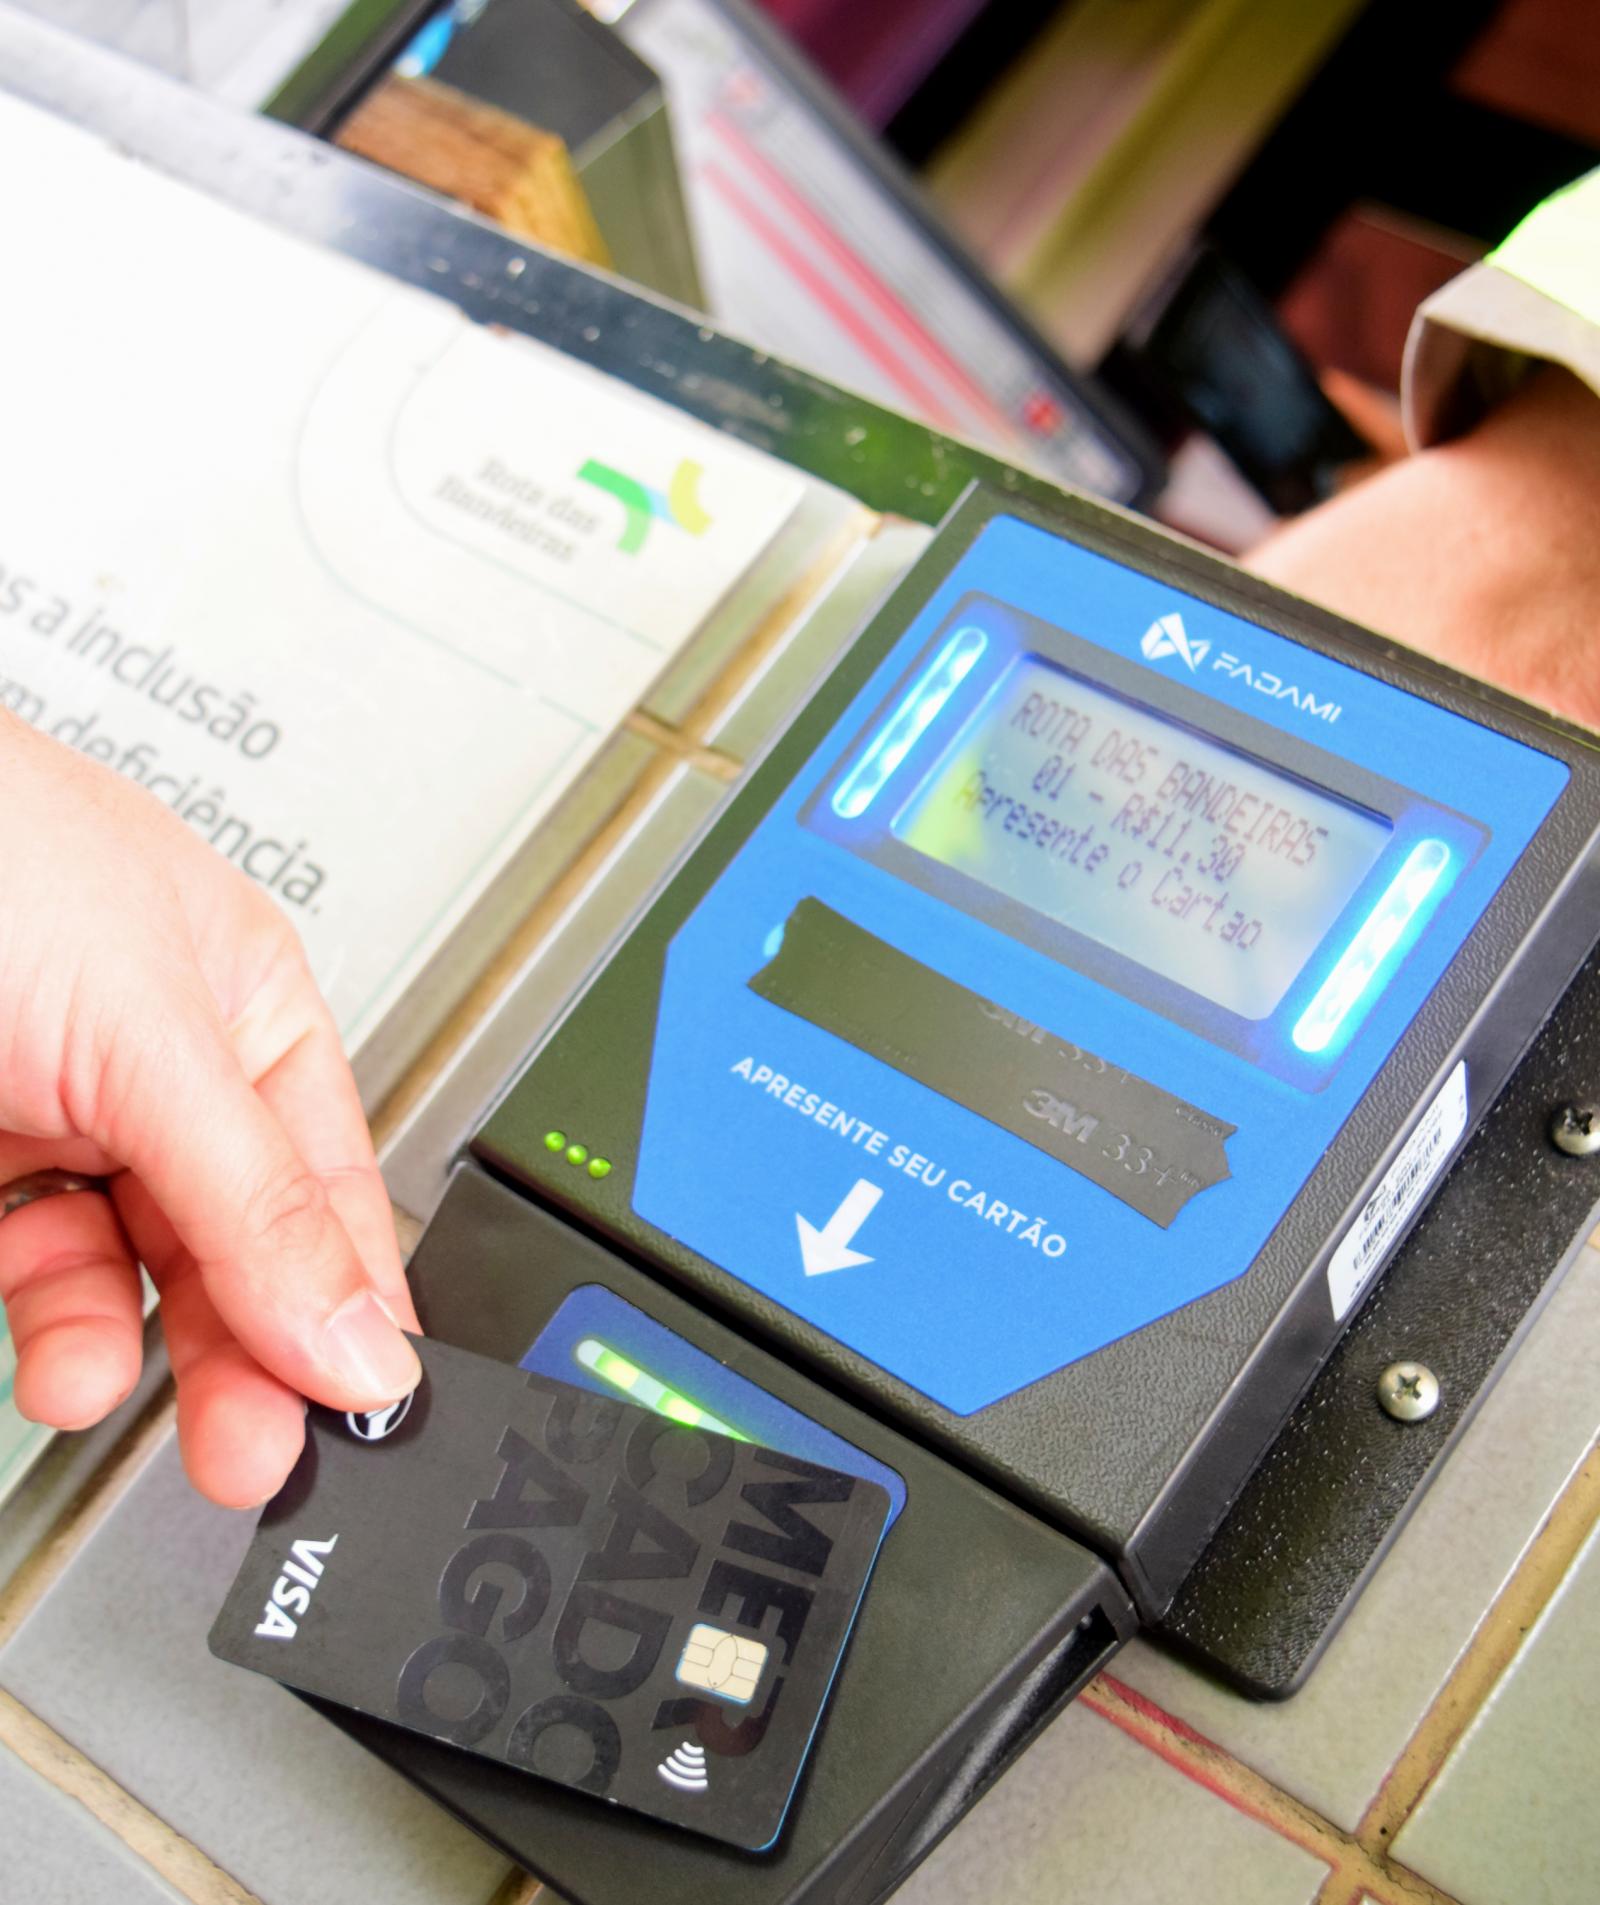 Corredor Dom Pedro de rodovias aceitará pagamento no débito e crédito por aproximação (NFC) das tarifas de pedágio